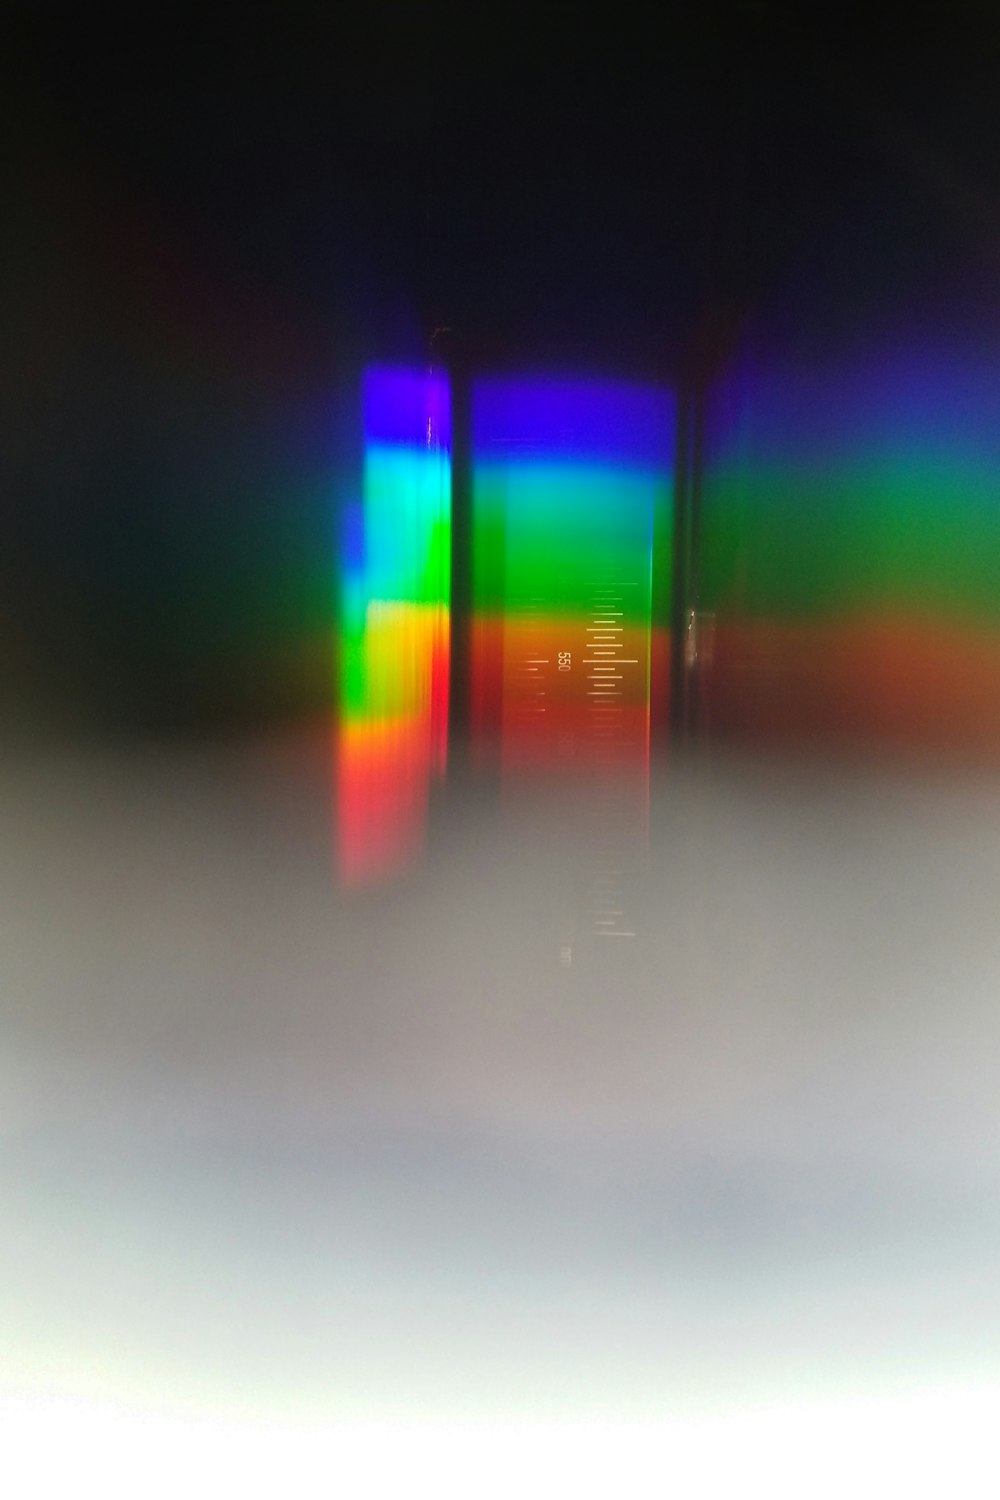 Una foto borrosa de un teléfono celular con una pantalla colorida